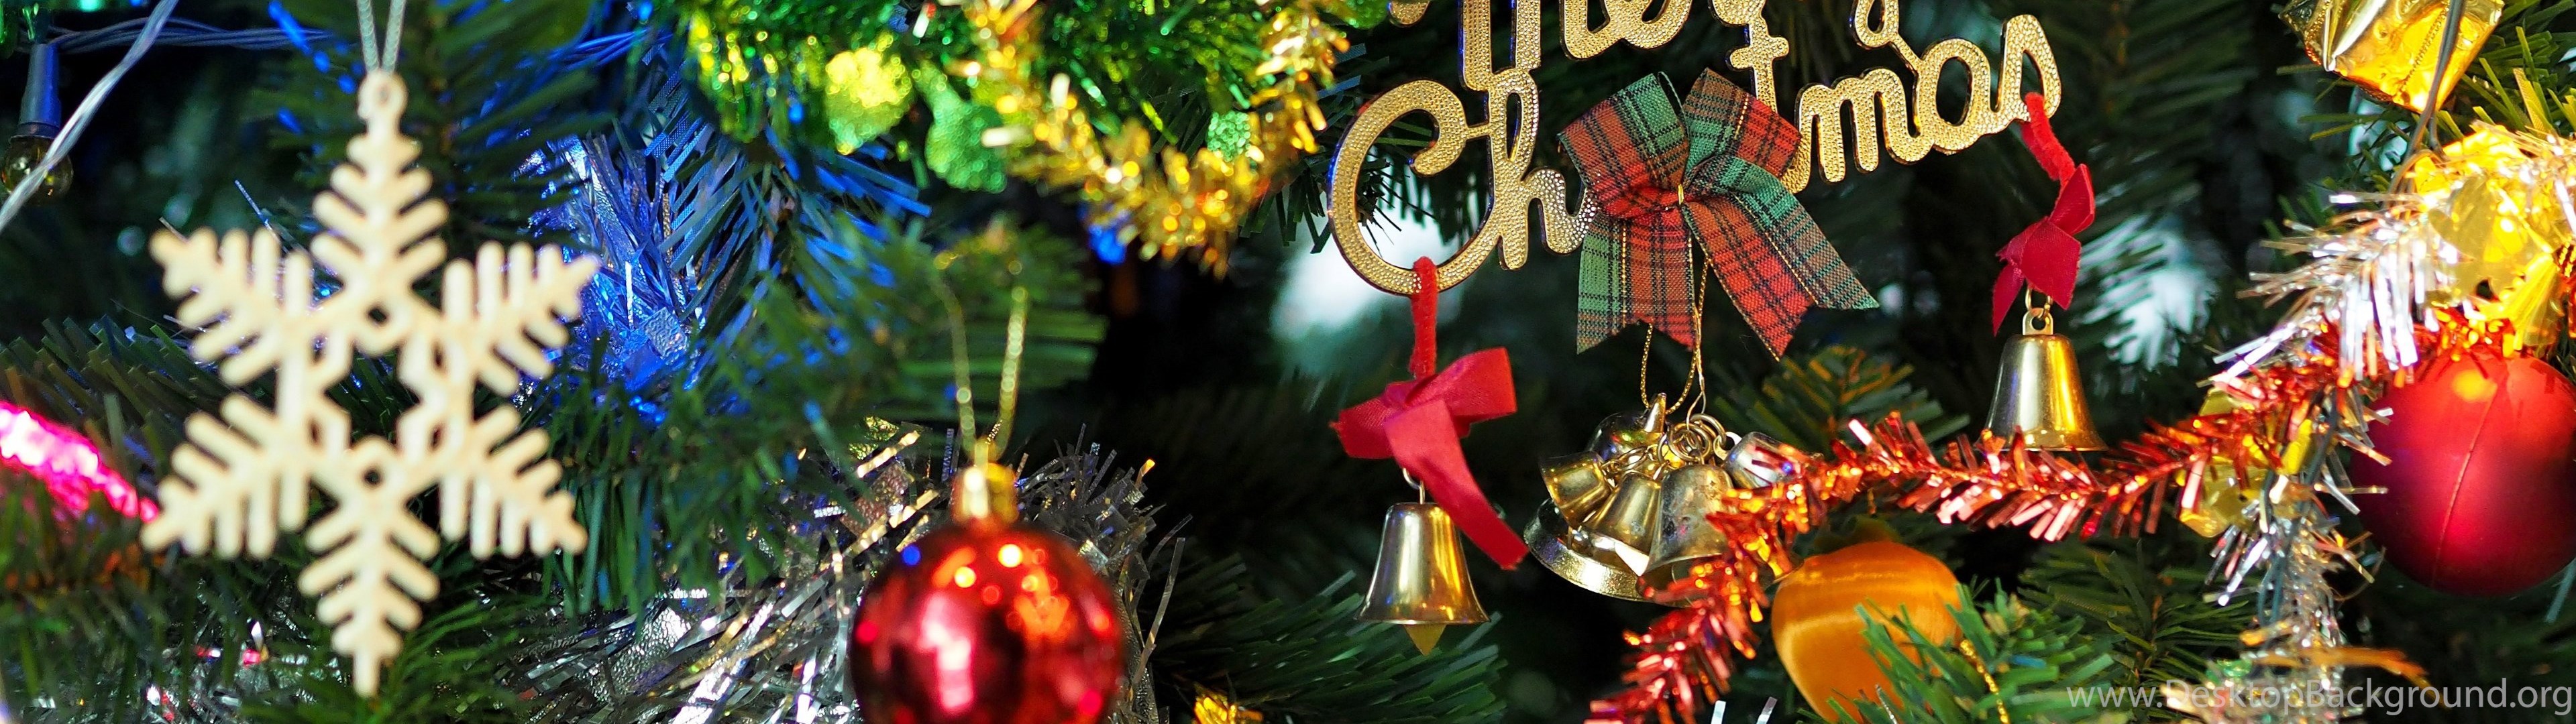 monitor dual de navidad fondo de pantalla,decoración navideña,decoración navideña,navidad,árbol de navidad,nochebuena